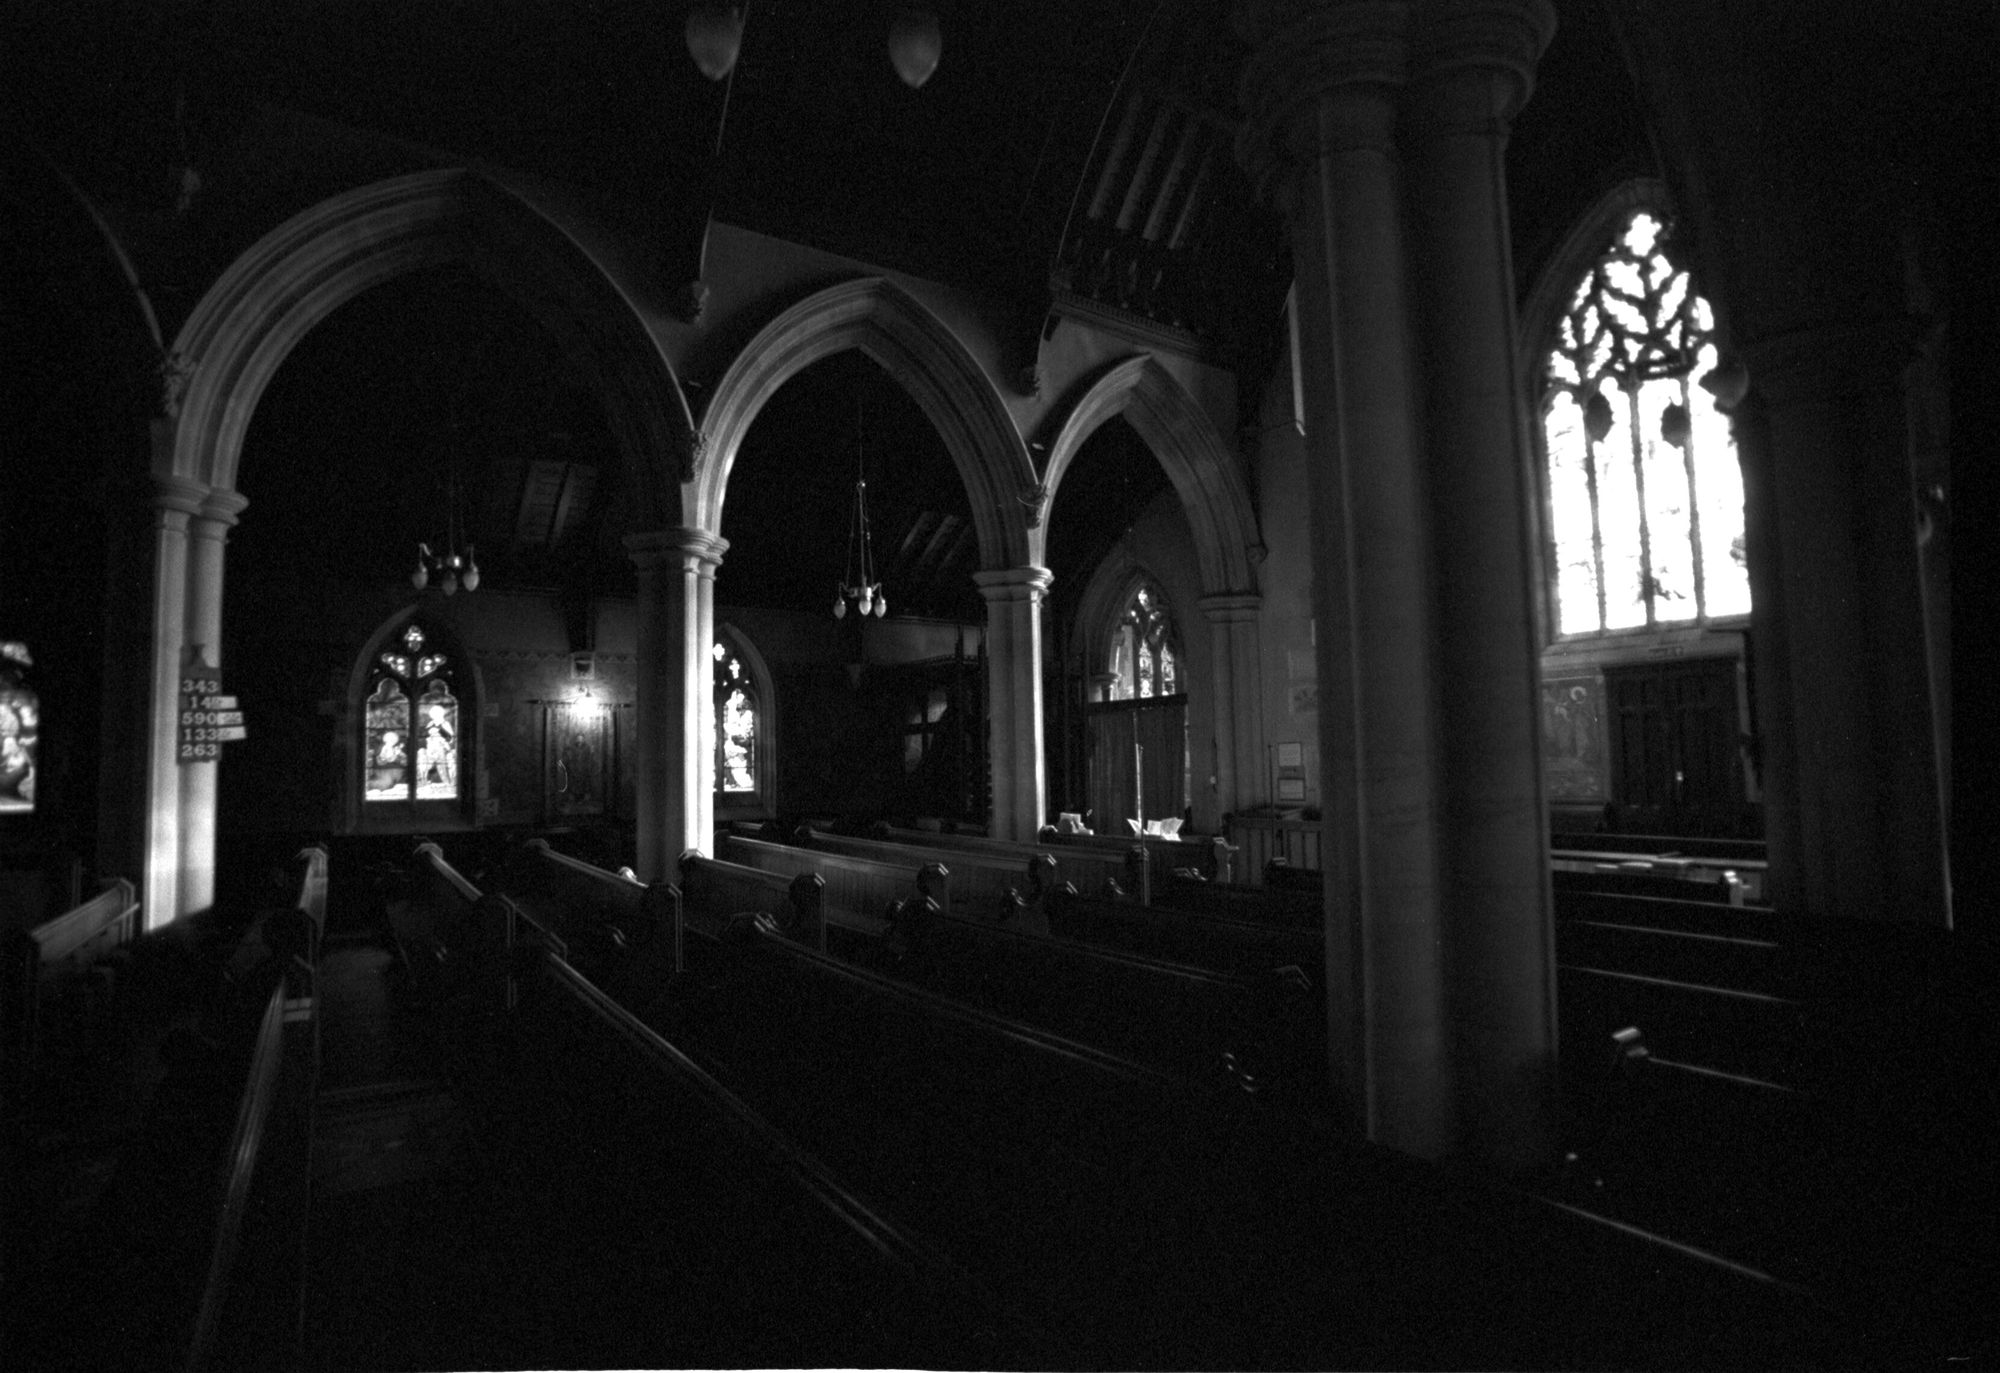 04 - St Thomas a Becket Church dn2-0040-04